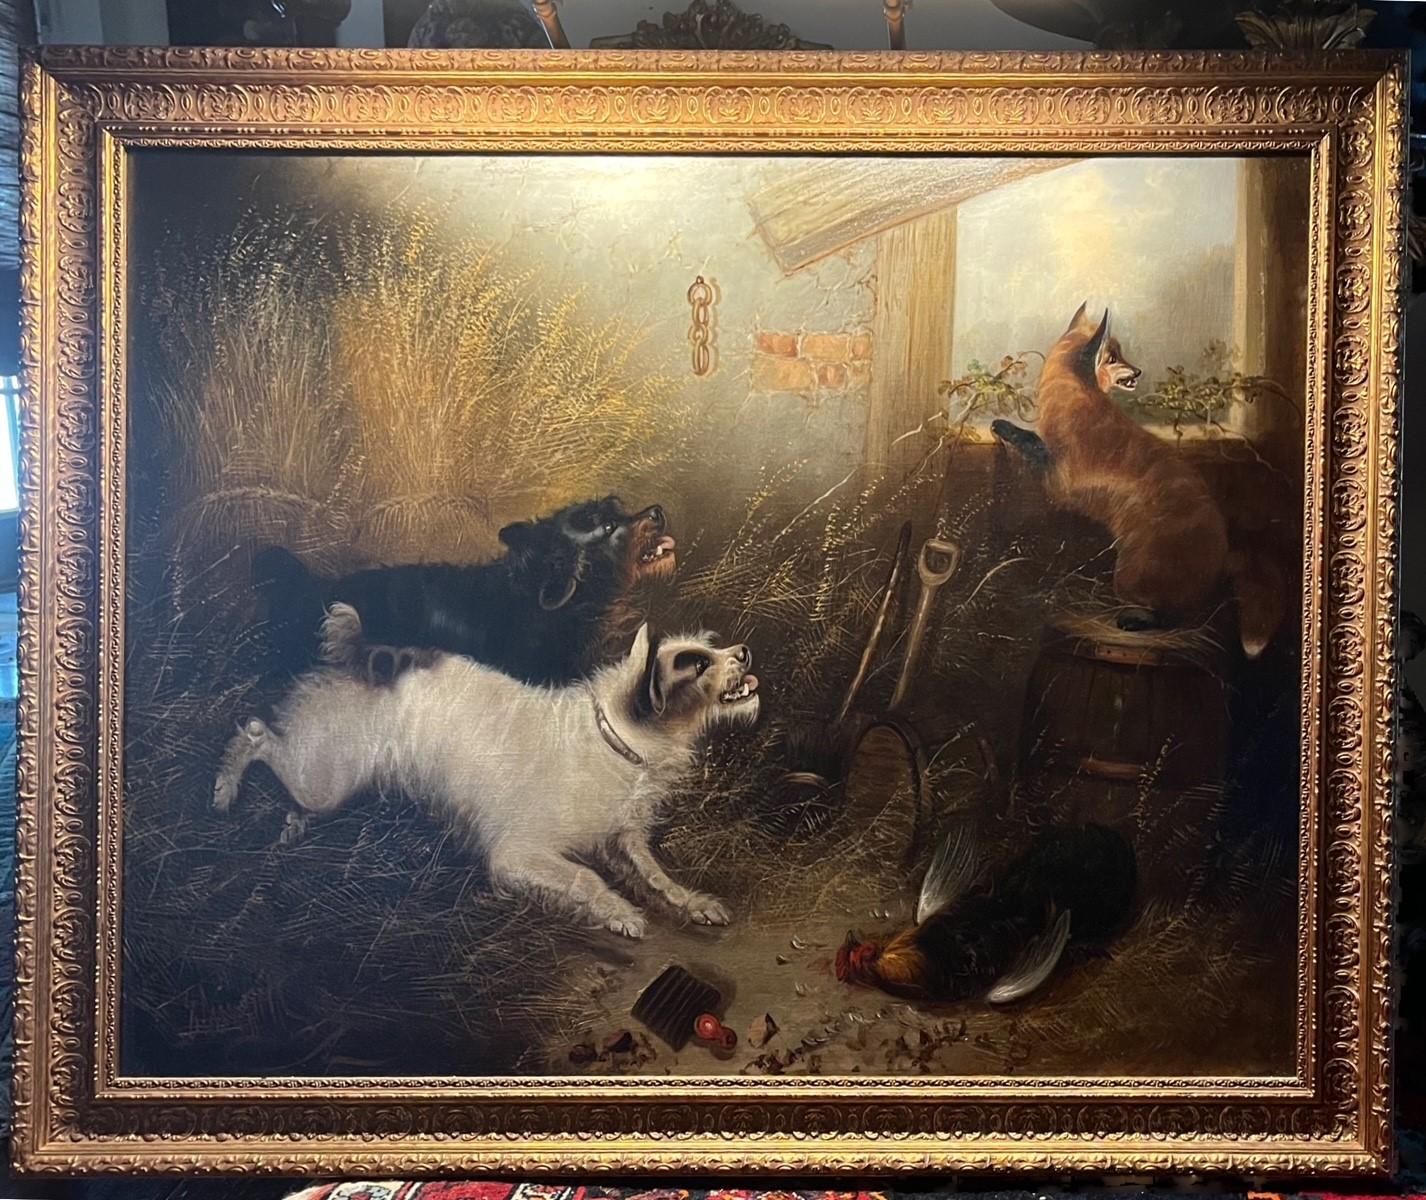 Großes englisches Ölgemälde des 19. Jahrhunderts -Jagd auf den Fuchs- signiert E. Armfield

Großes, signiertes Gemälde in Öl auf Leinwand. Es zeigt zwei Hunde, die einen Fuchs vor einem Hahn verjagen. Das Gemälde ist in höchster künstlerischer